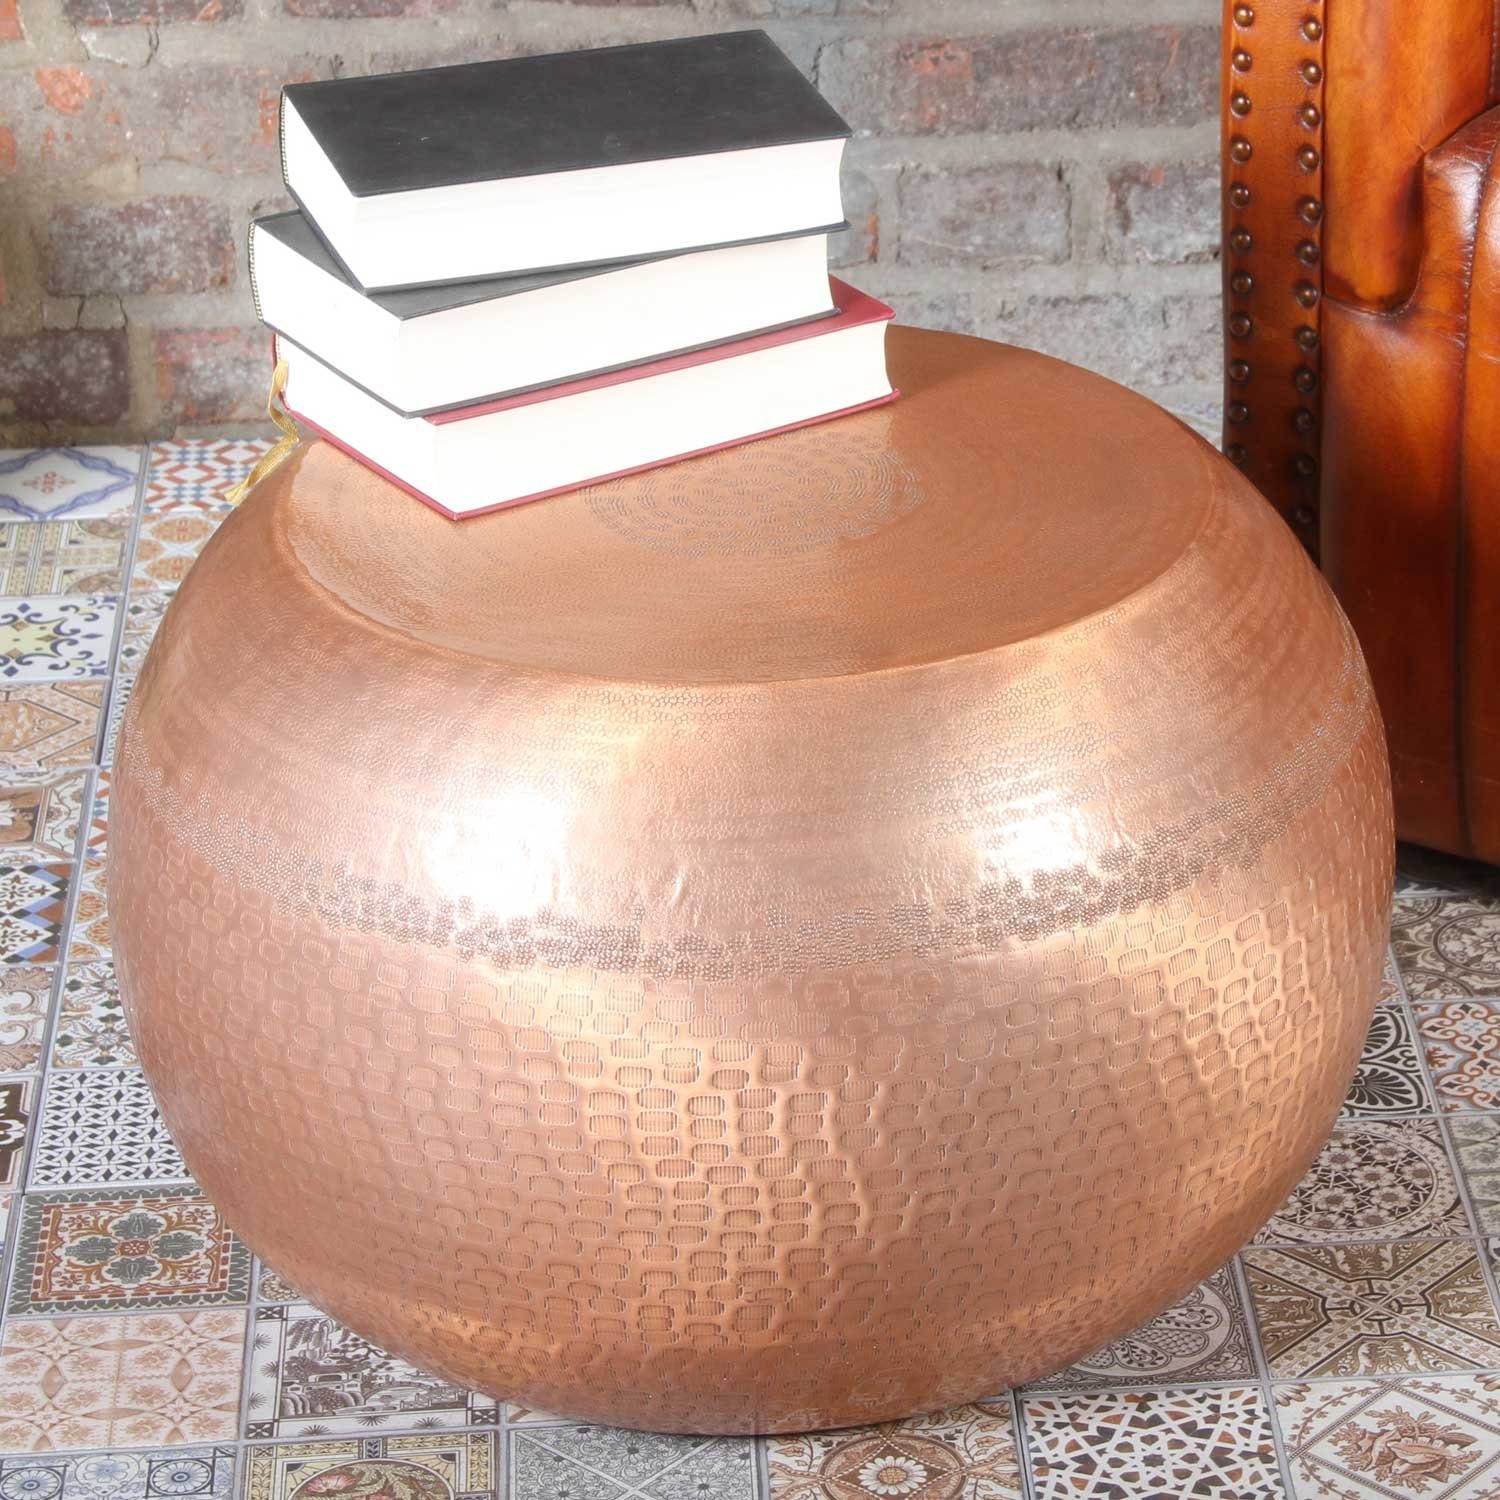 Sofatisch Luxus Höhe Orientalischer Couchtisch Yara Hocker Beistelltisch Tisch), aus 35cm mit 55cm Aluminium Hammerschlag, 1 Casa Moro ein Kupfer (Couchtisch Ø rund